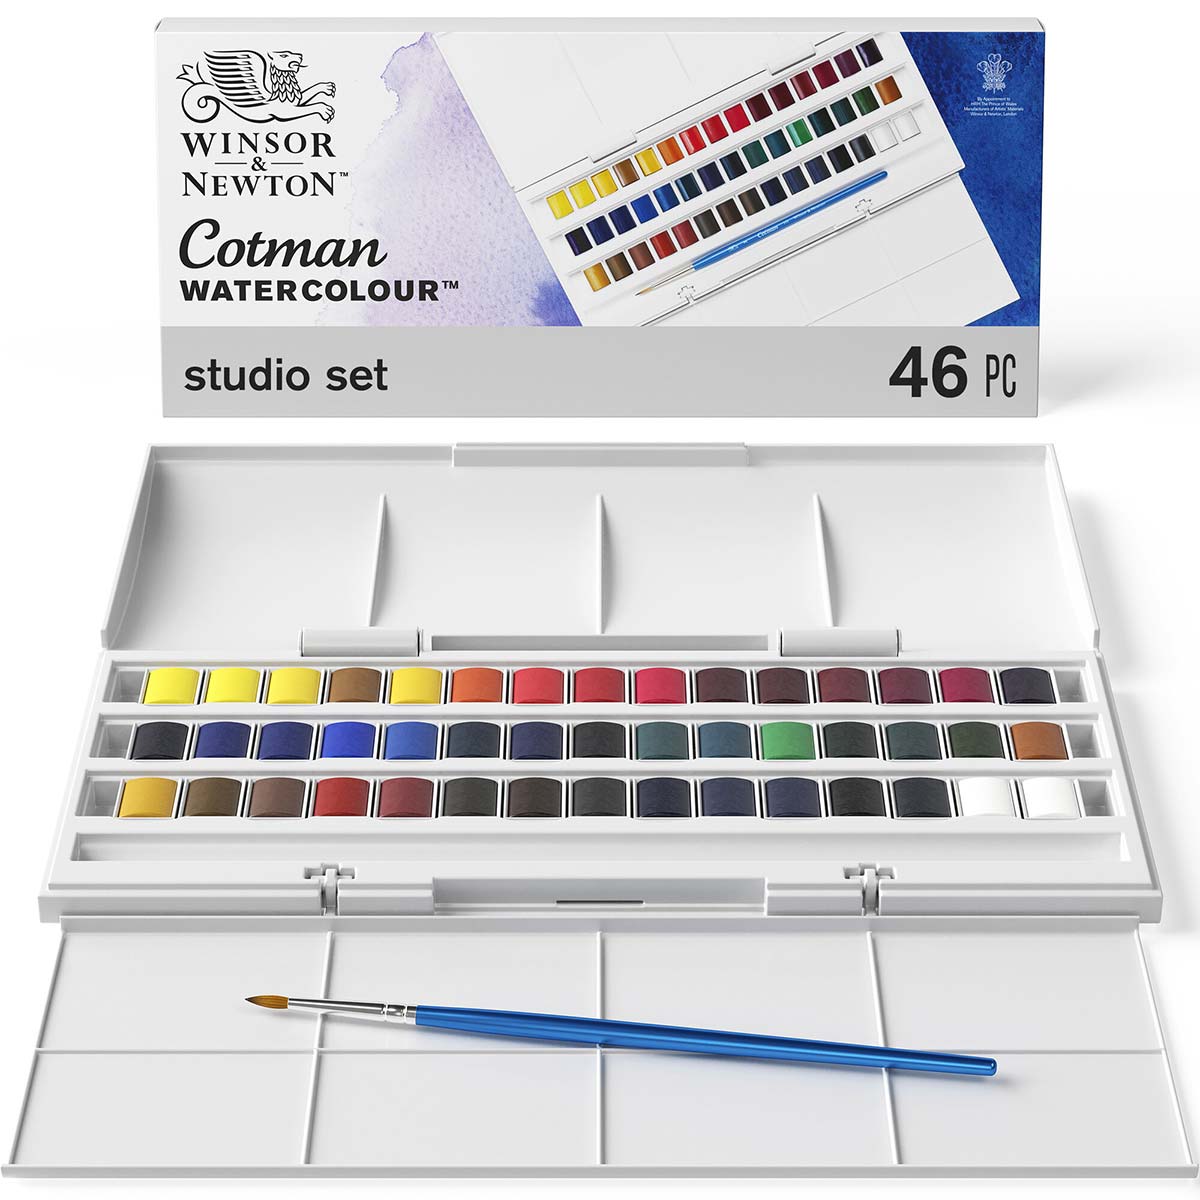 Winsor et Newton - Cotman Watercolor - 45 Half Pan Studio Set